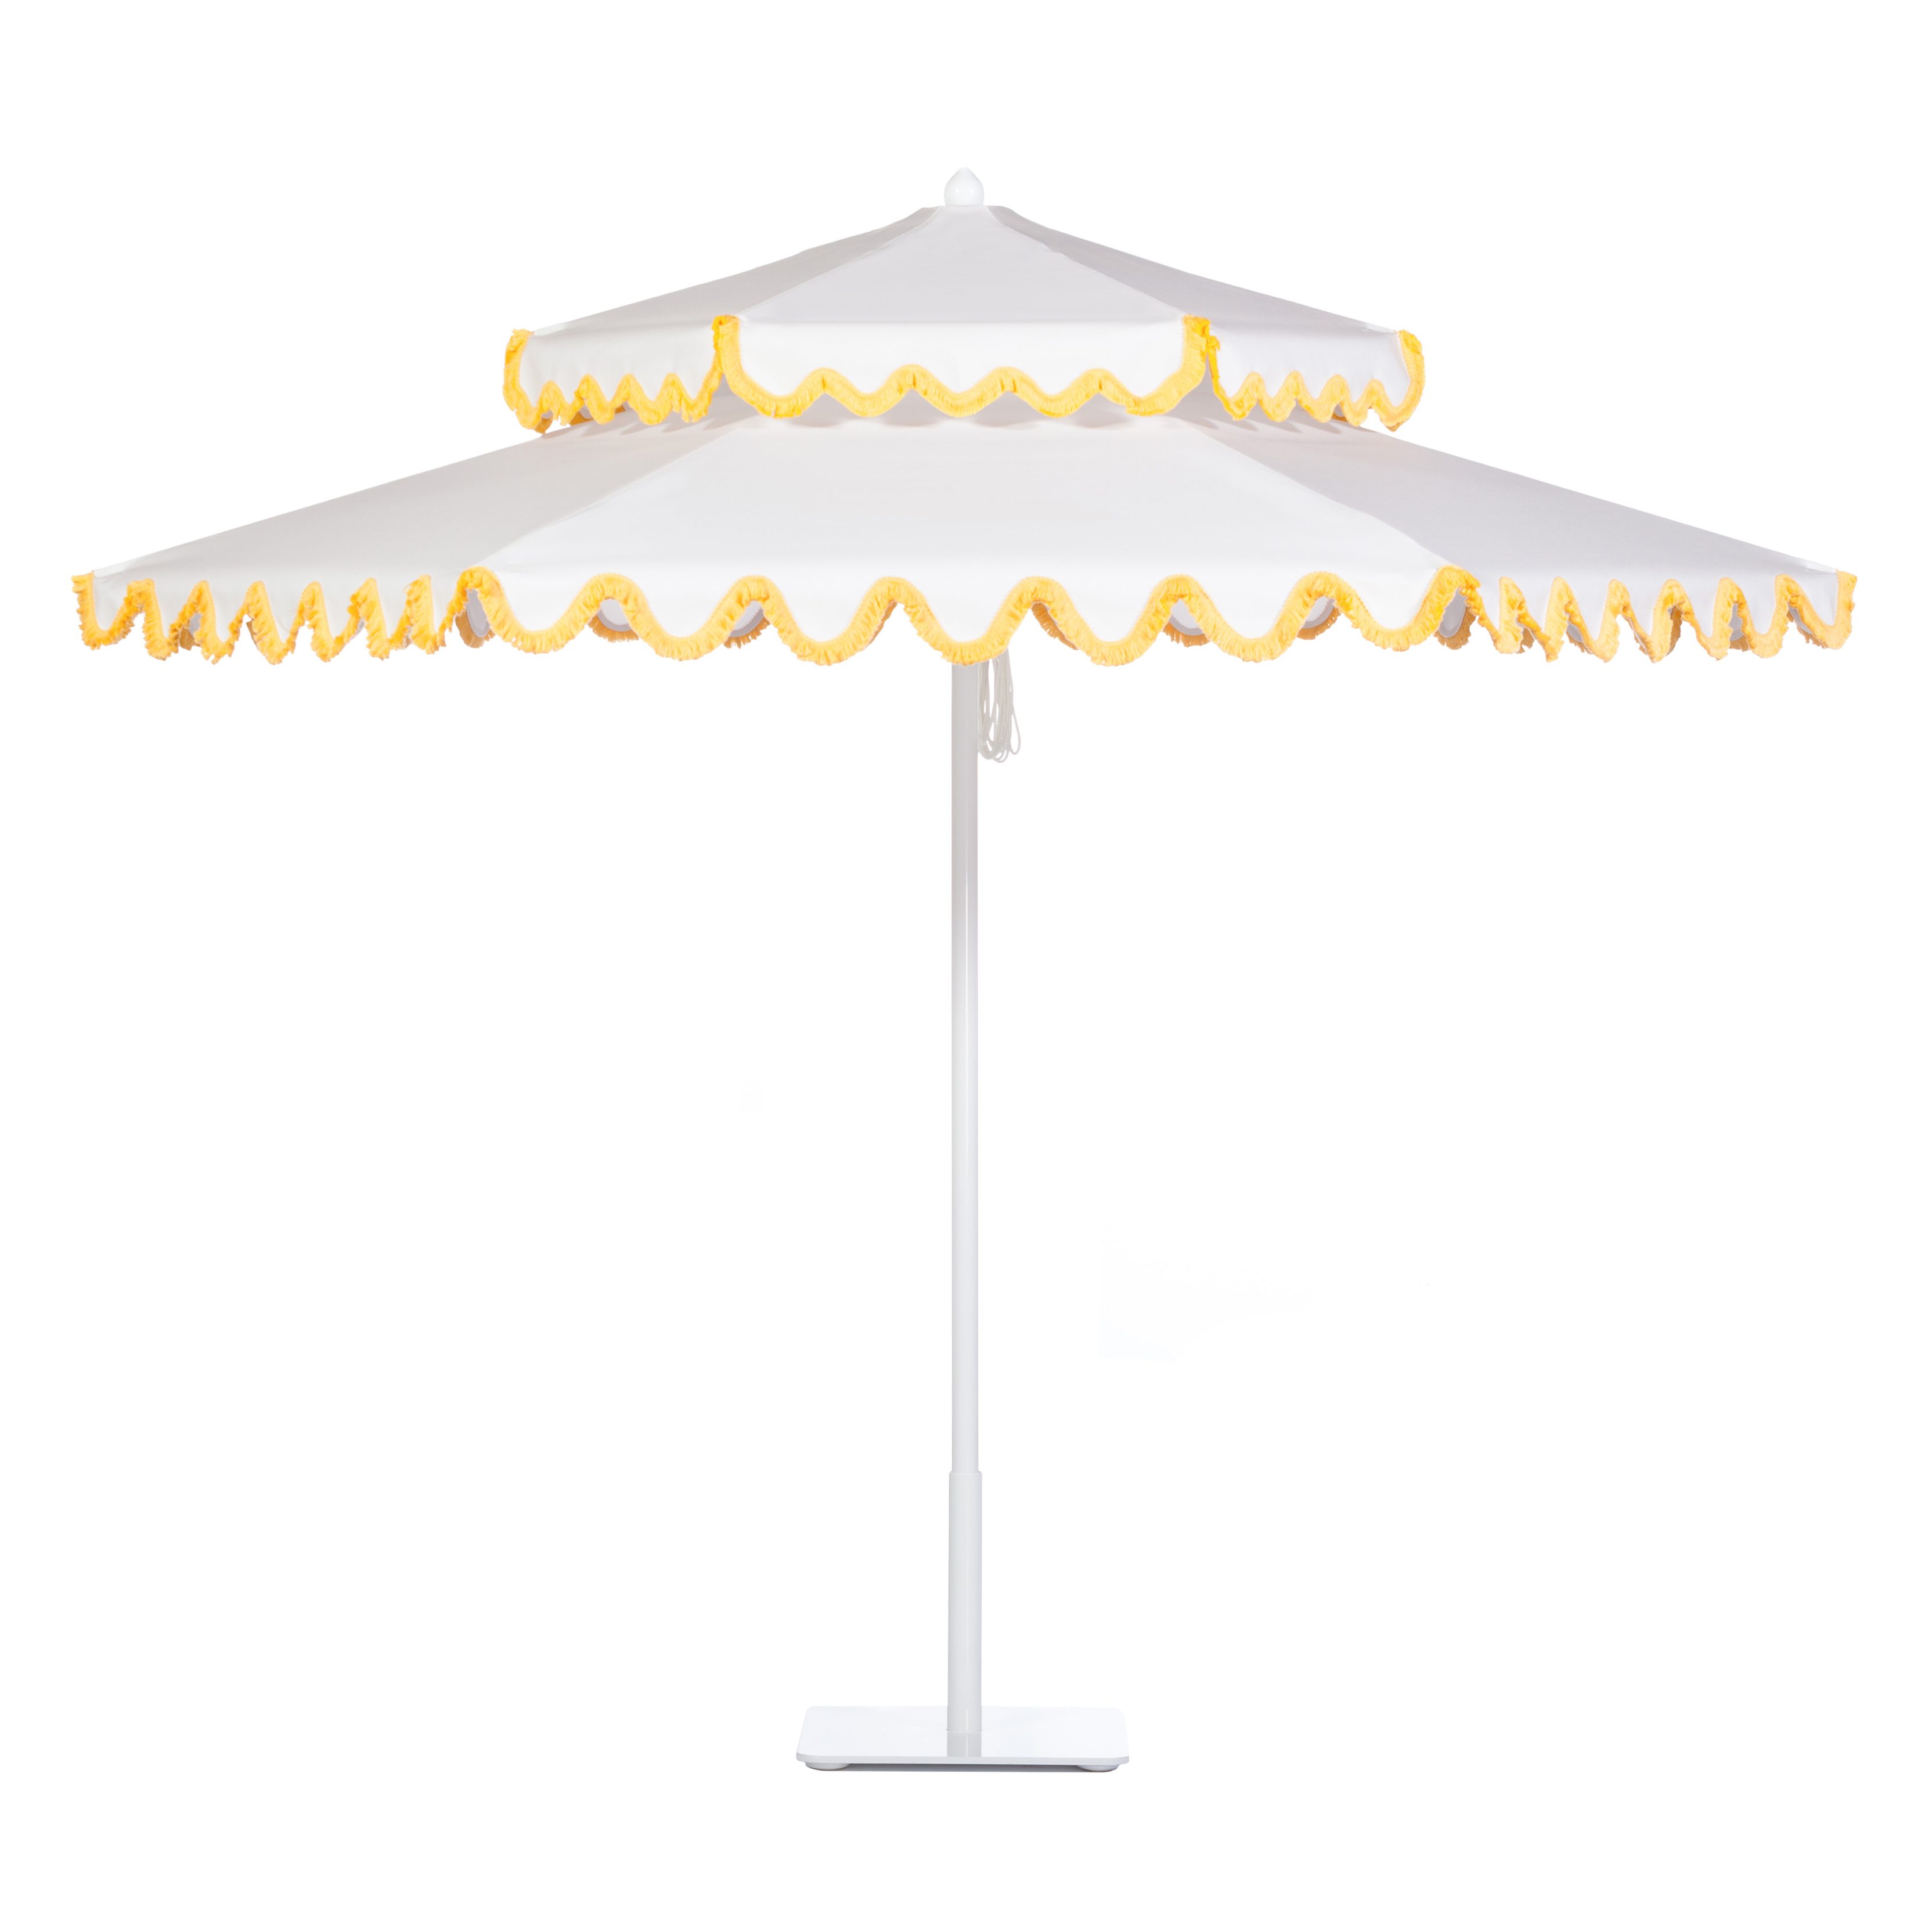 Whitecap Umbrella Image